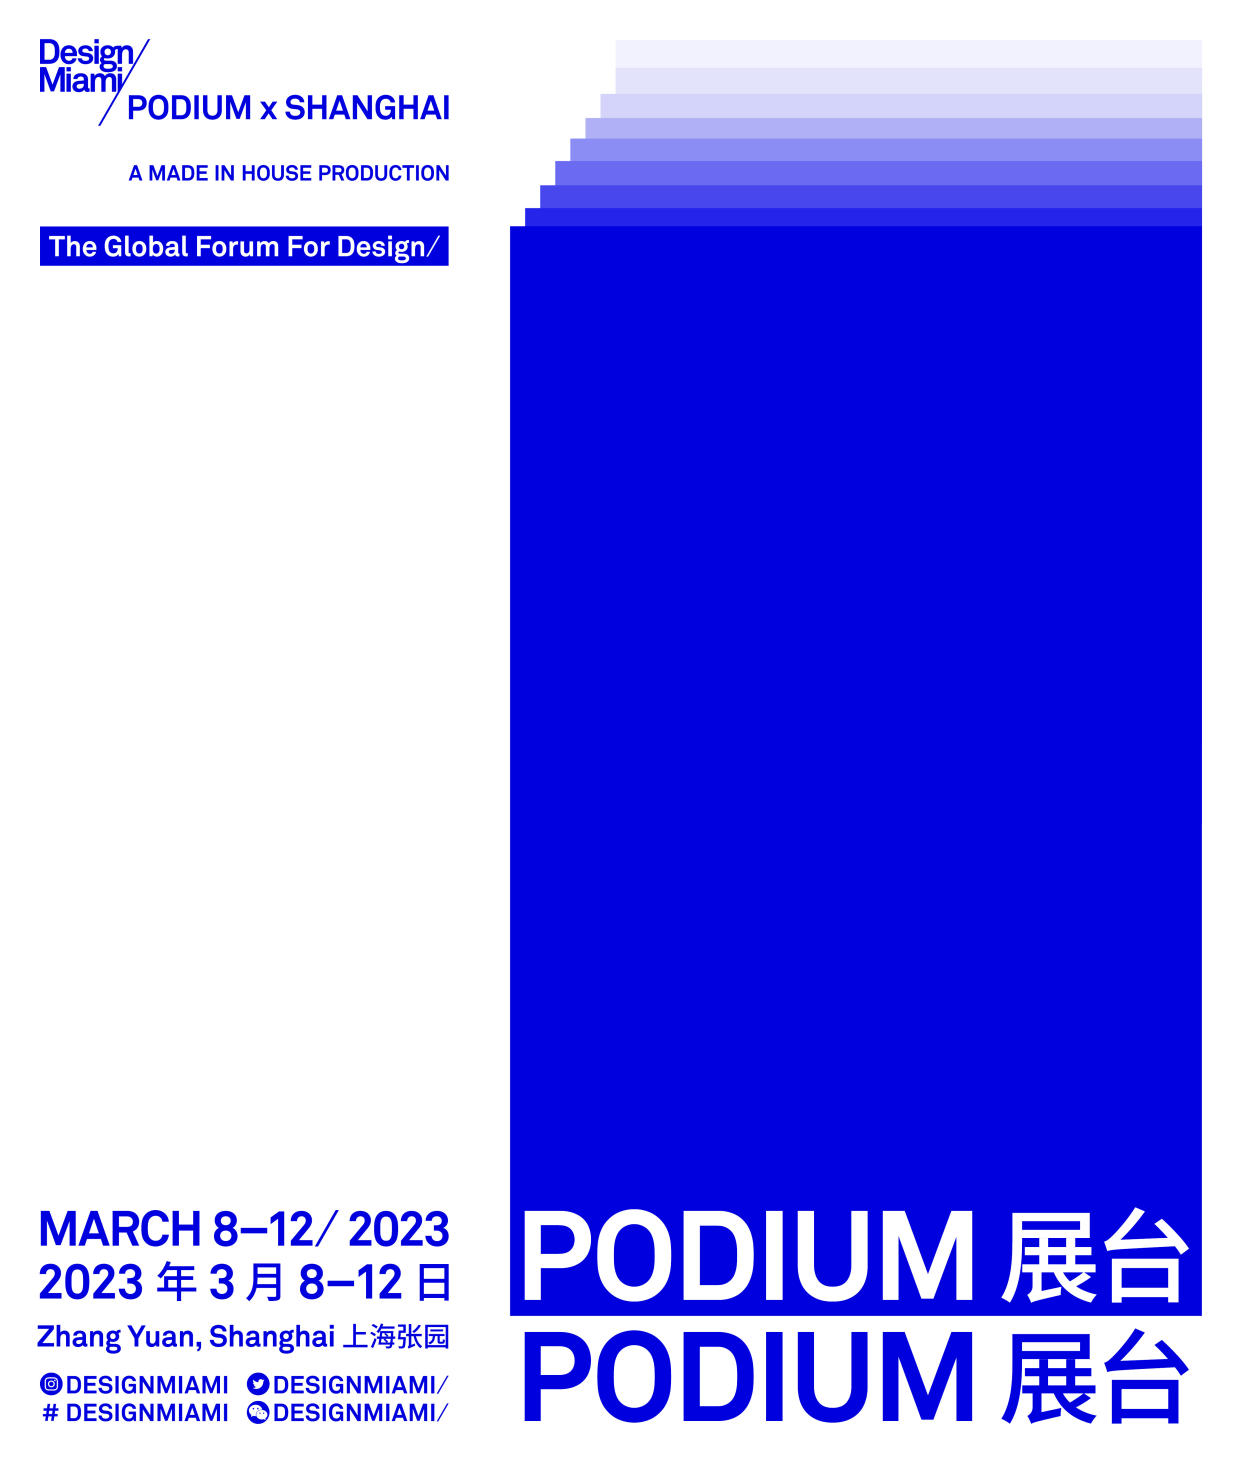 Poster for Design Miami/Podium x Shanghai 2023.